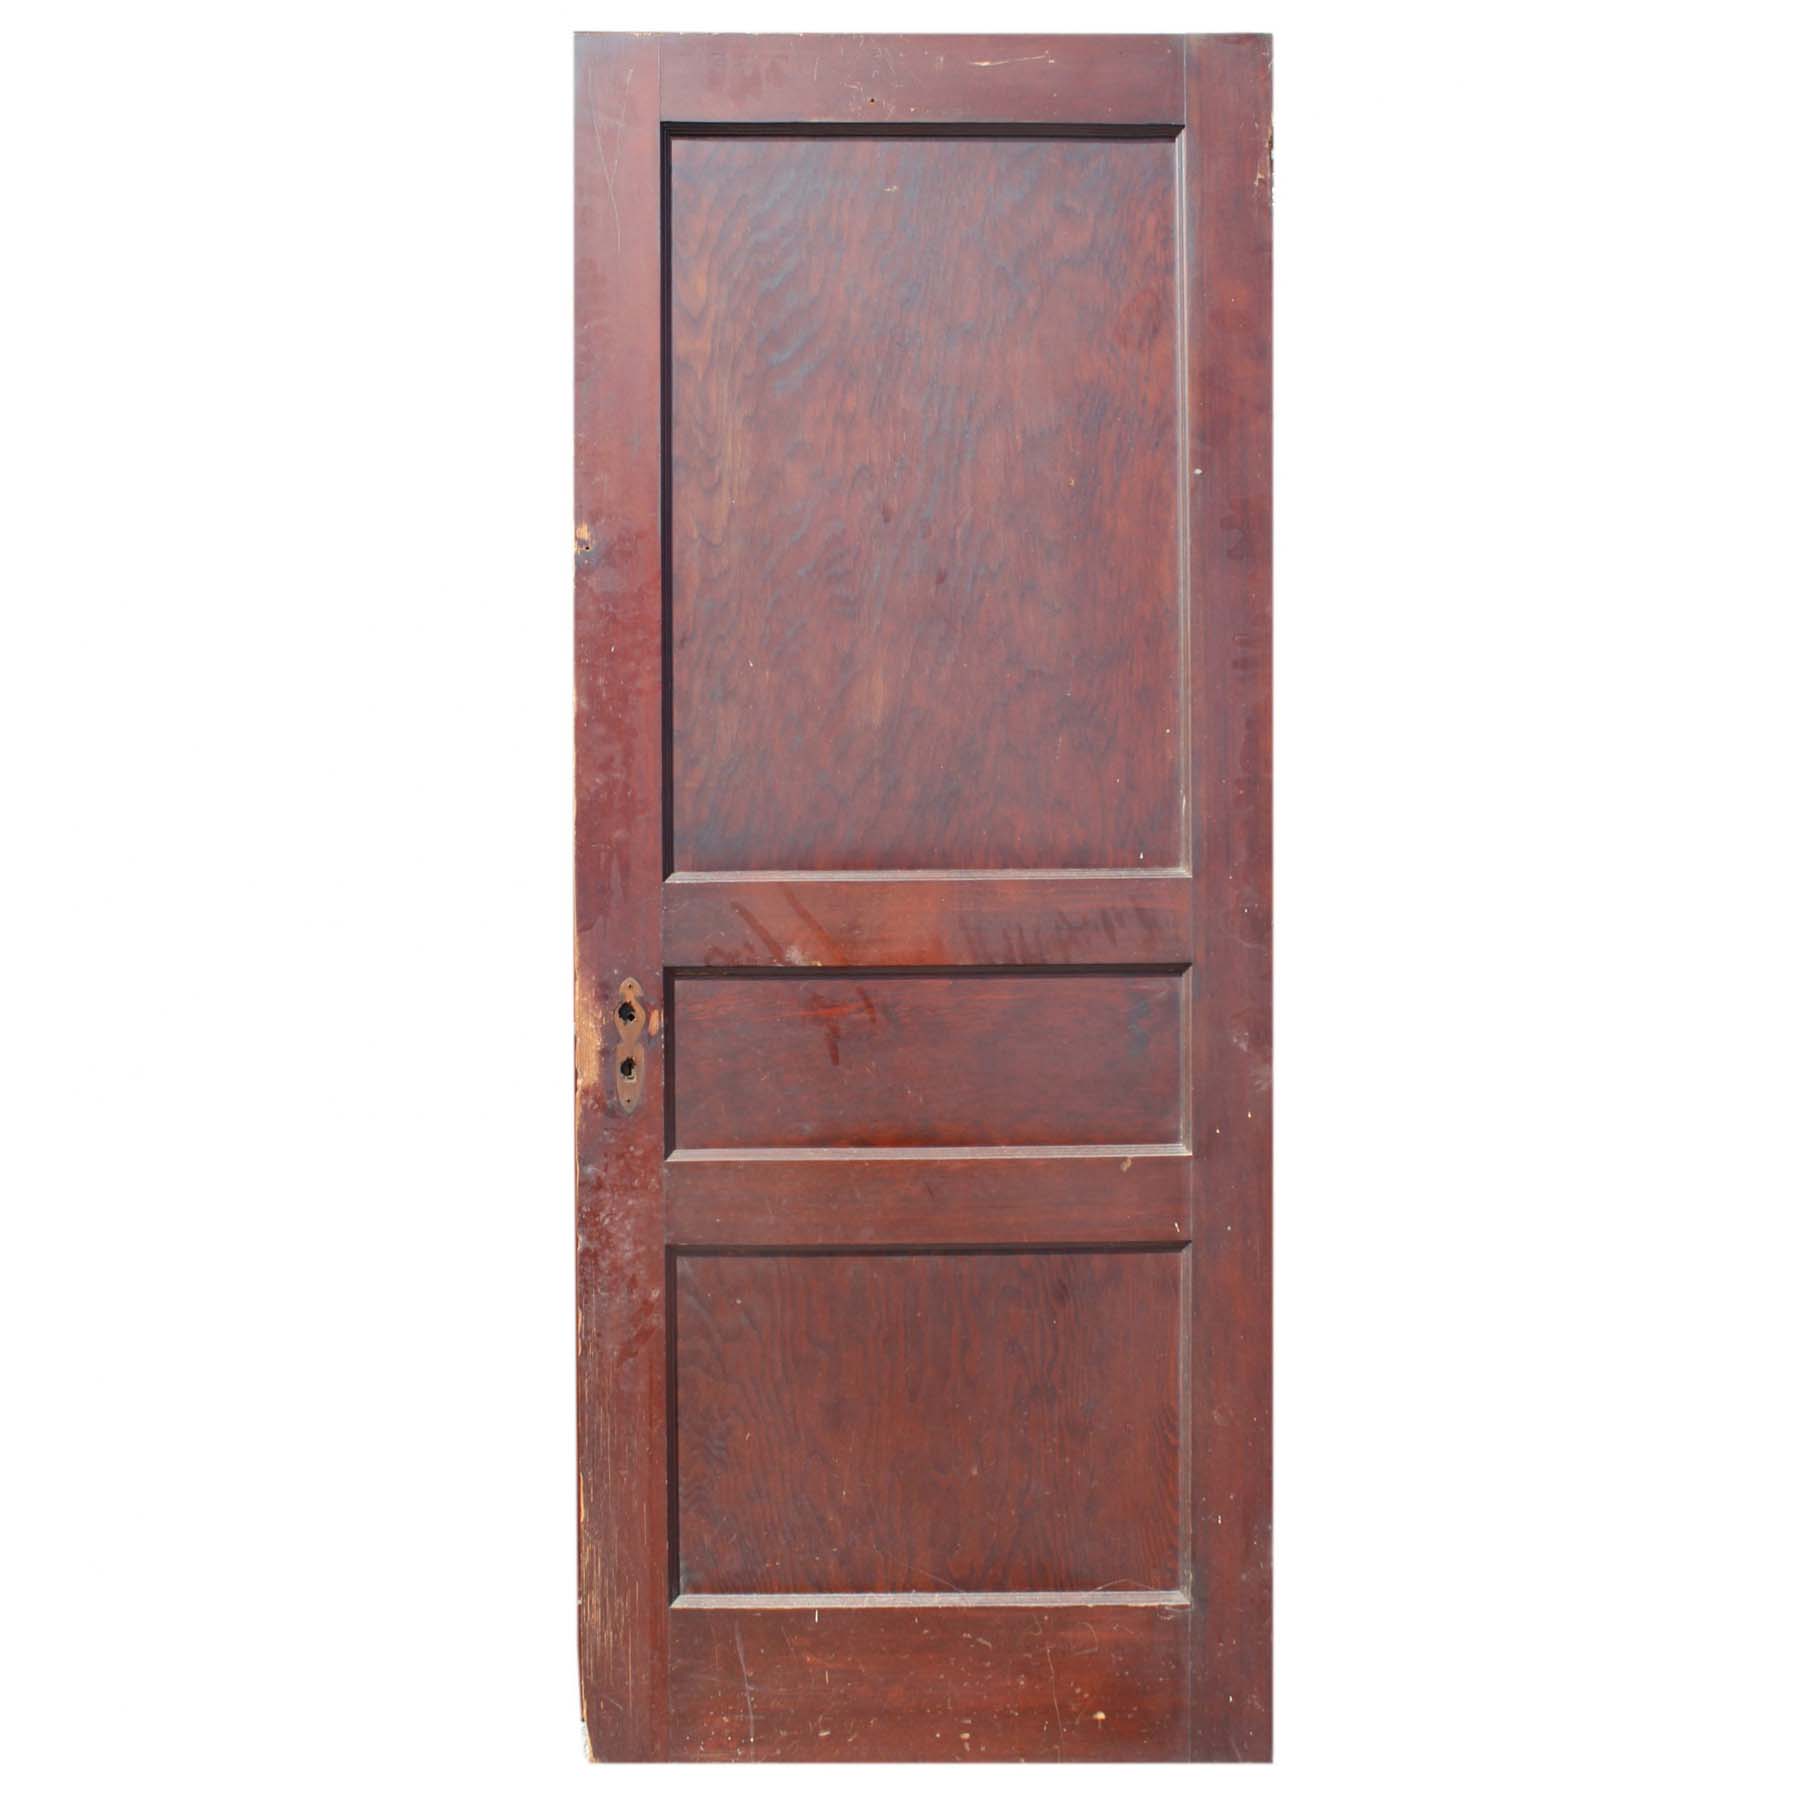 SOLD Salvaged 32” Three-Panel Solid Wood Door-71728